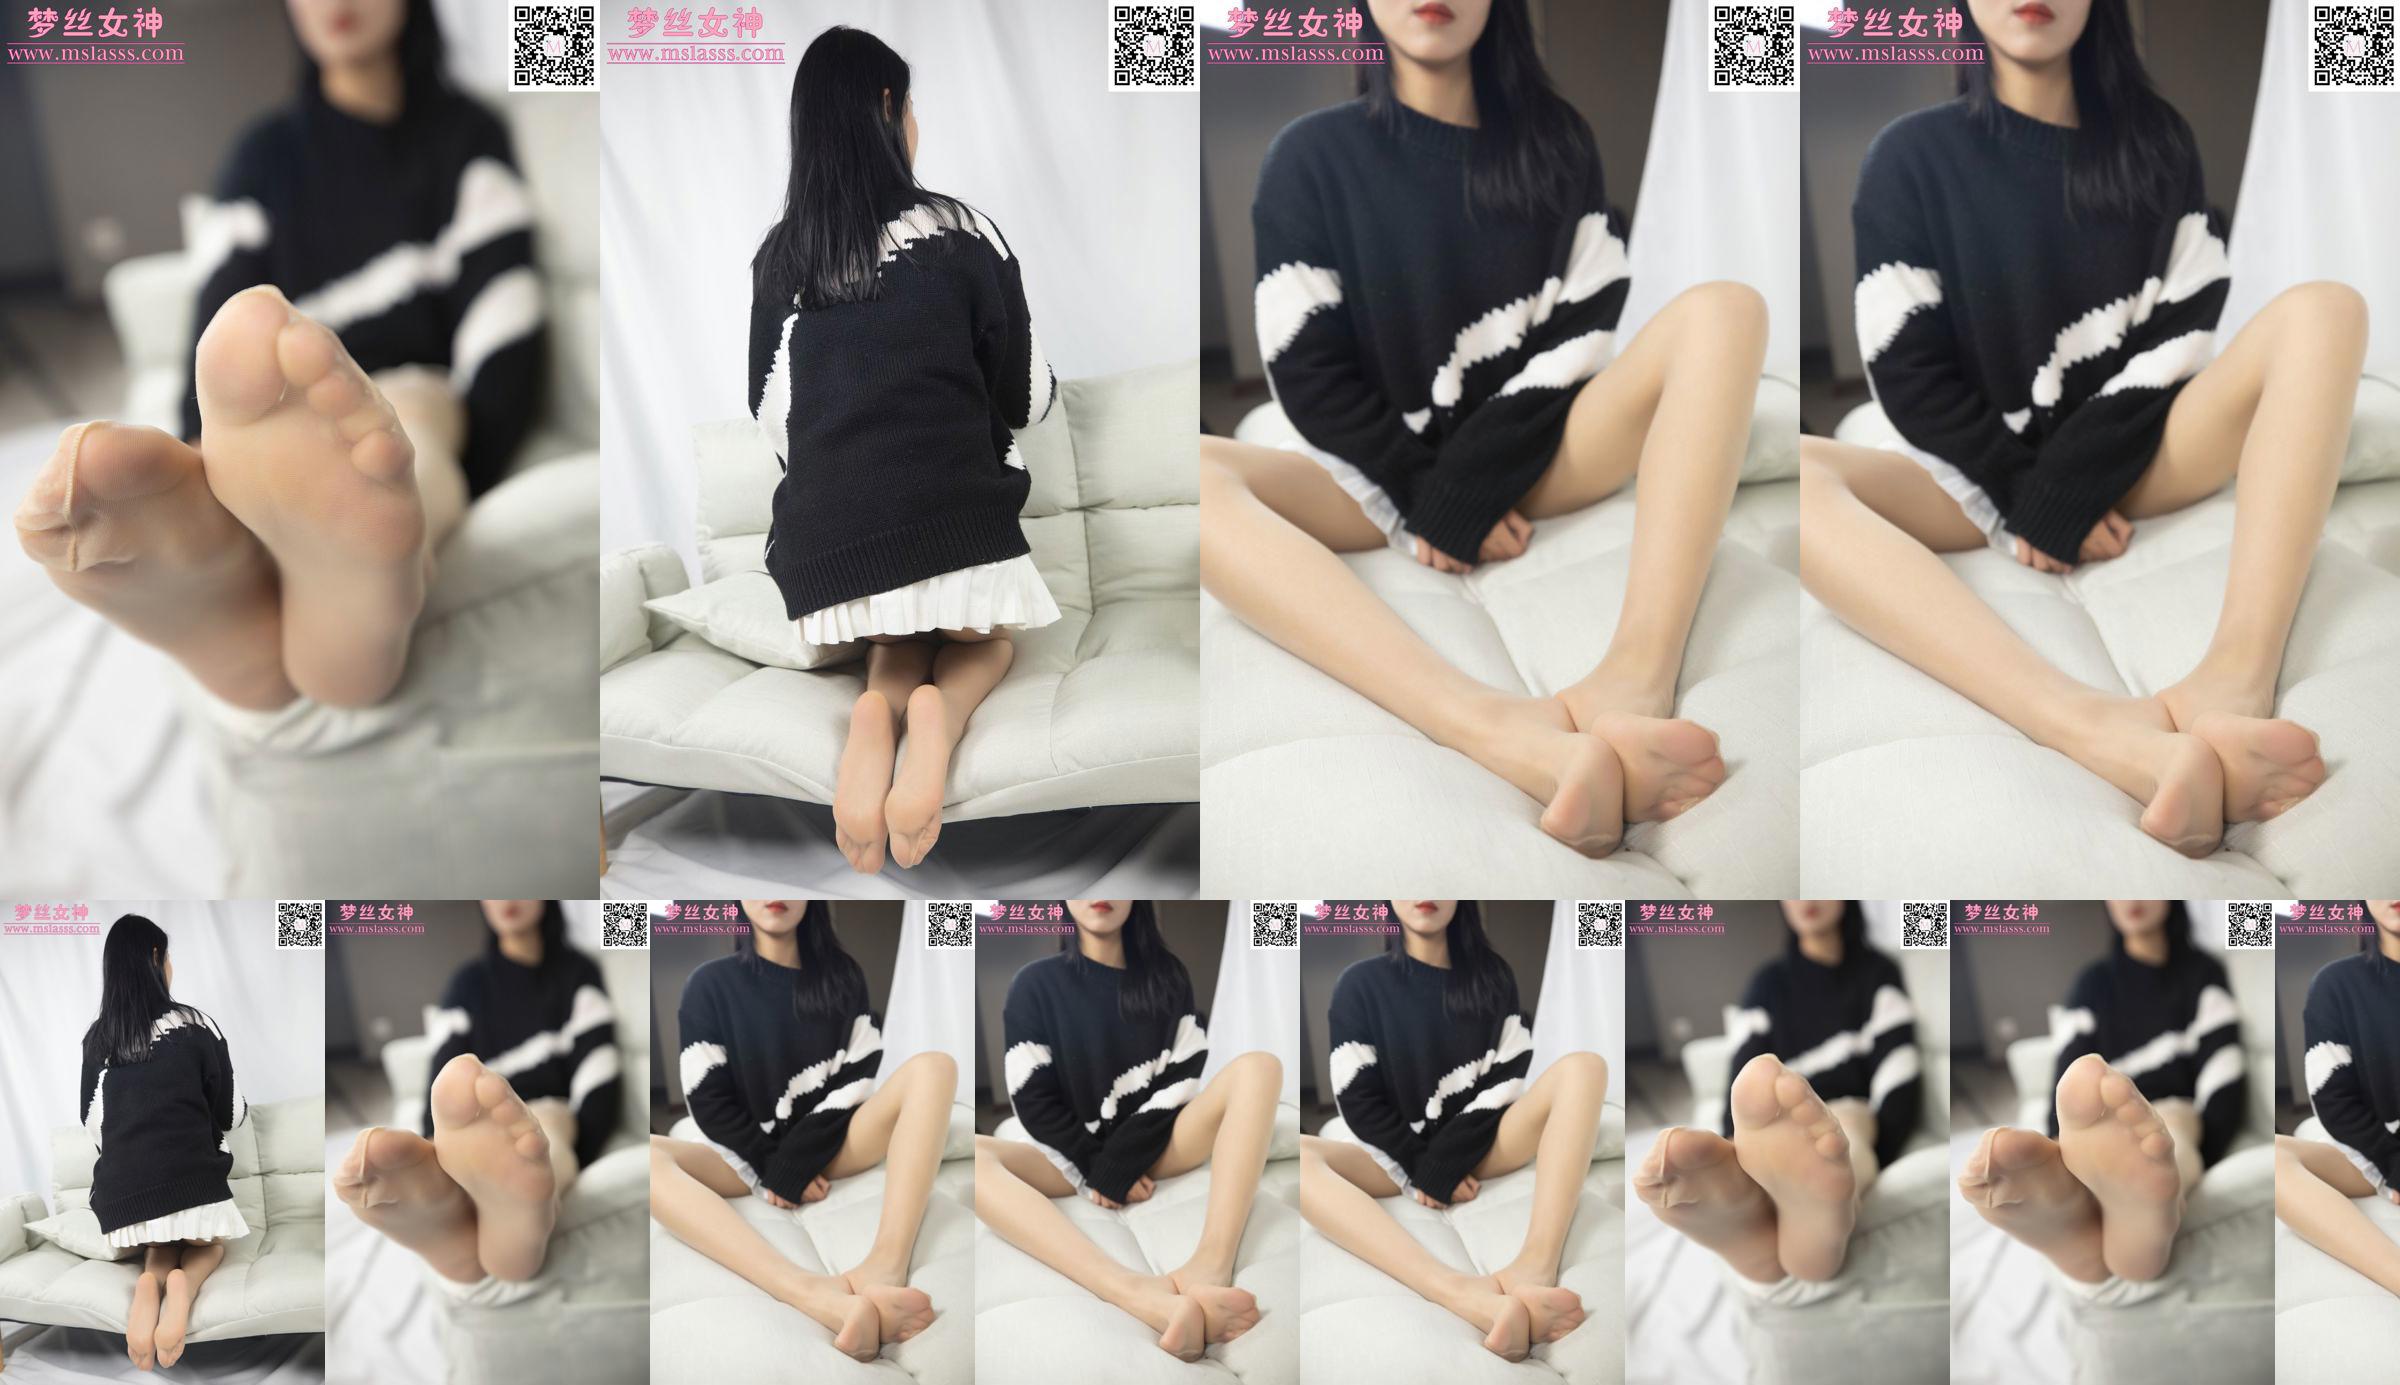 [Goddess of Dreams MSLASS] Áo len của Xiaomu không thể ngăn được đôi chân dài miên man của cô nàng No.57efc1 Trang 1